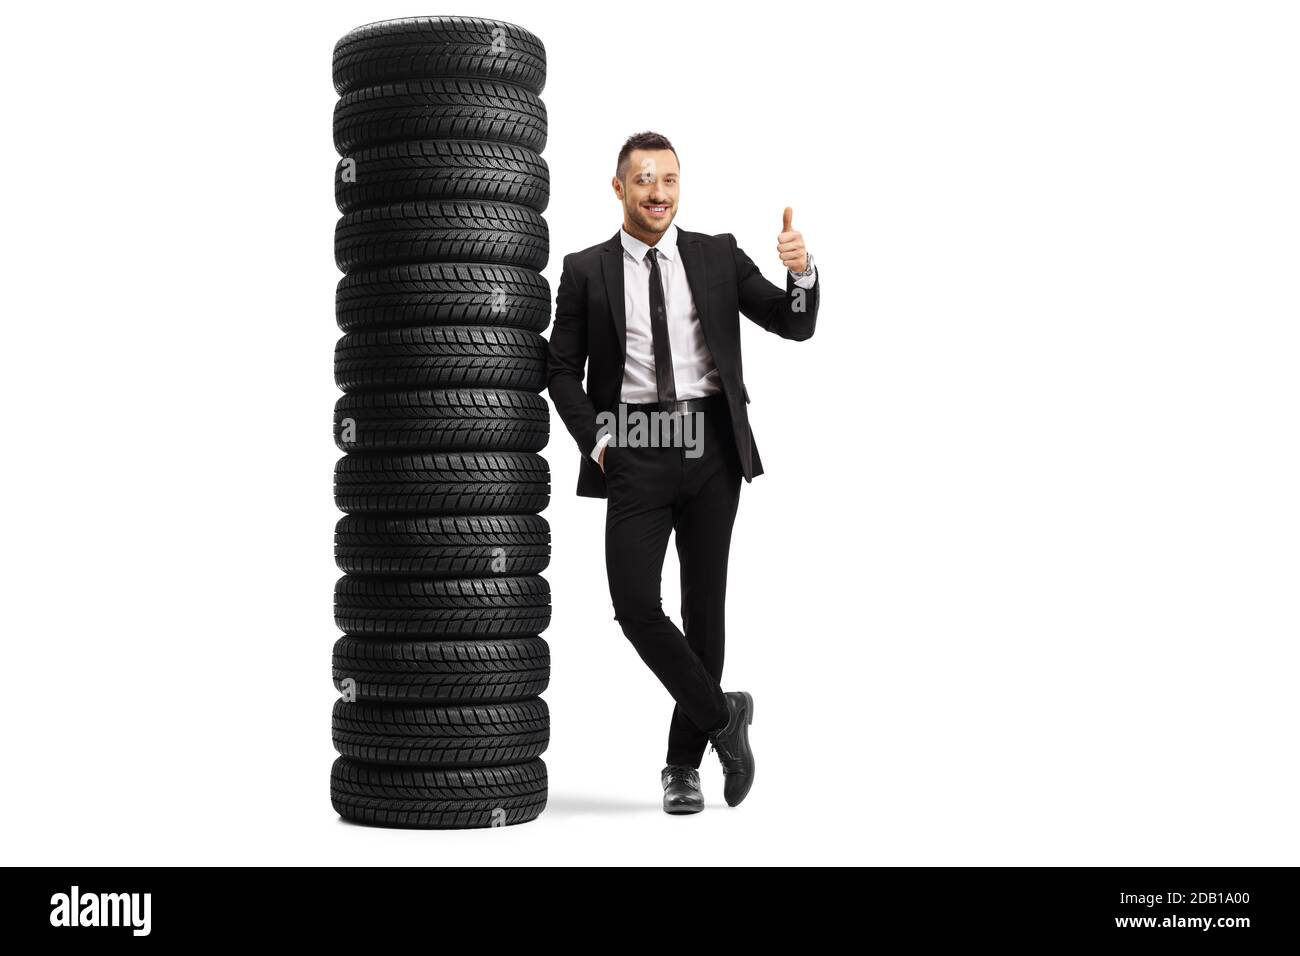 Ganzkörperportrait eines Mannes in einem schwarzen Anzug Sich auf einen Haufen Reifen lehnend und Daumen nach oben zeigend Isoliert auf weißem Hintergrund Stockfoto